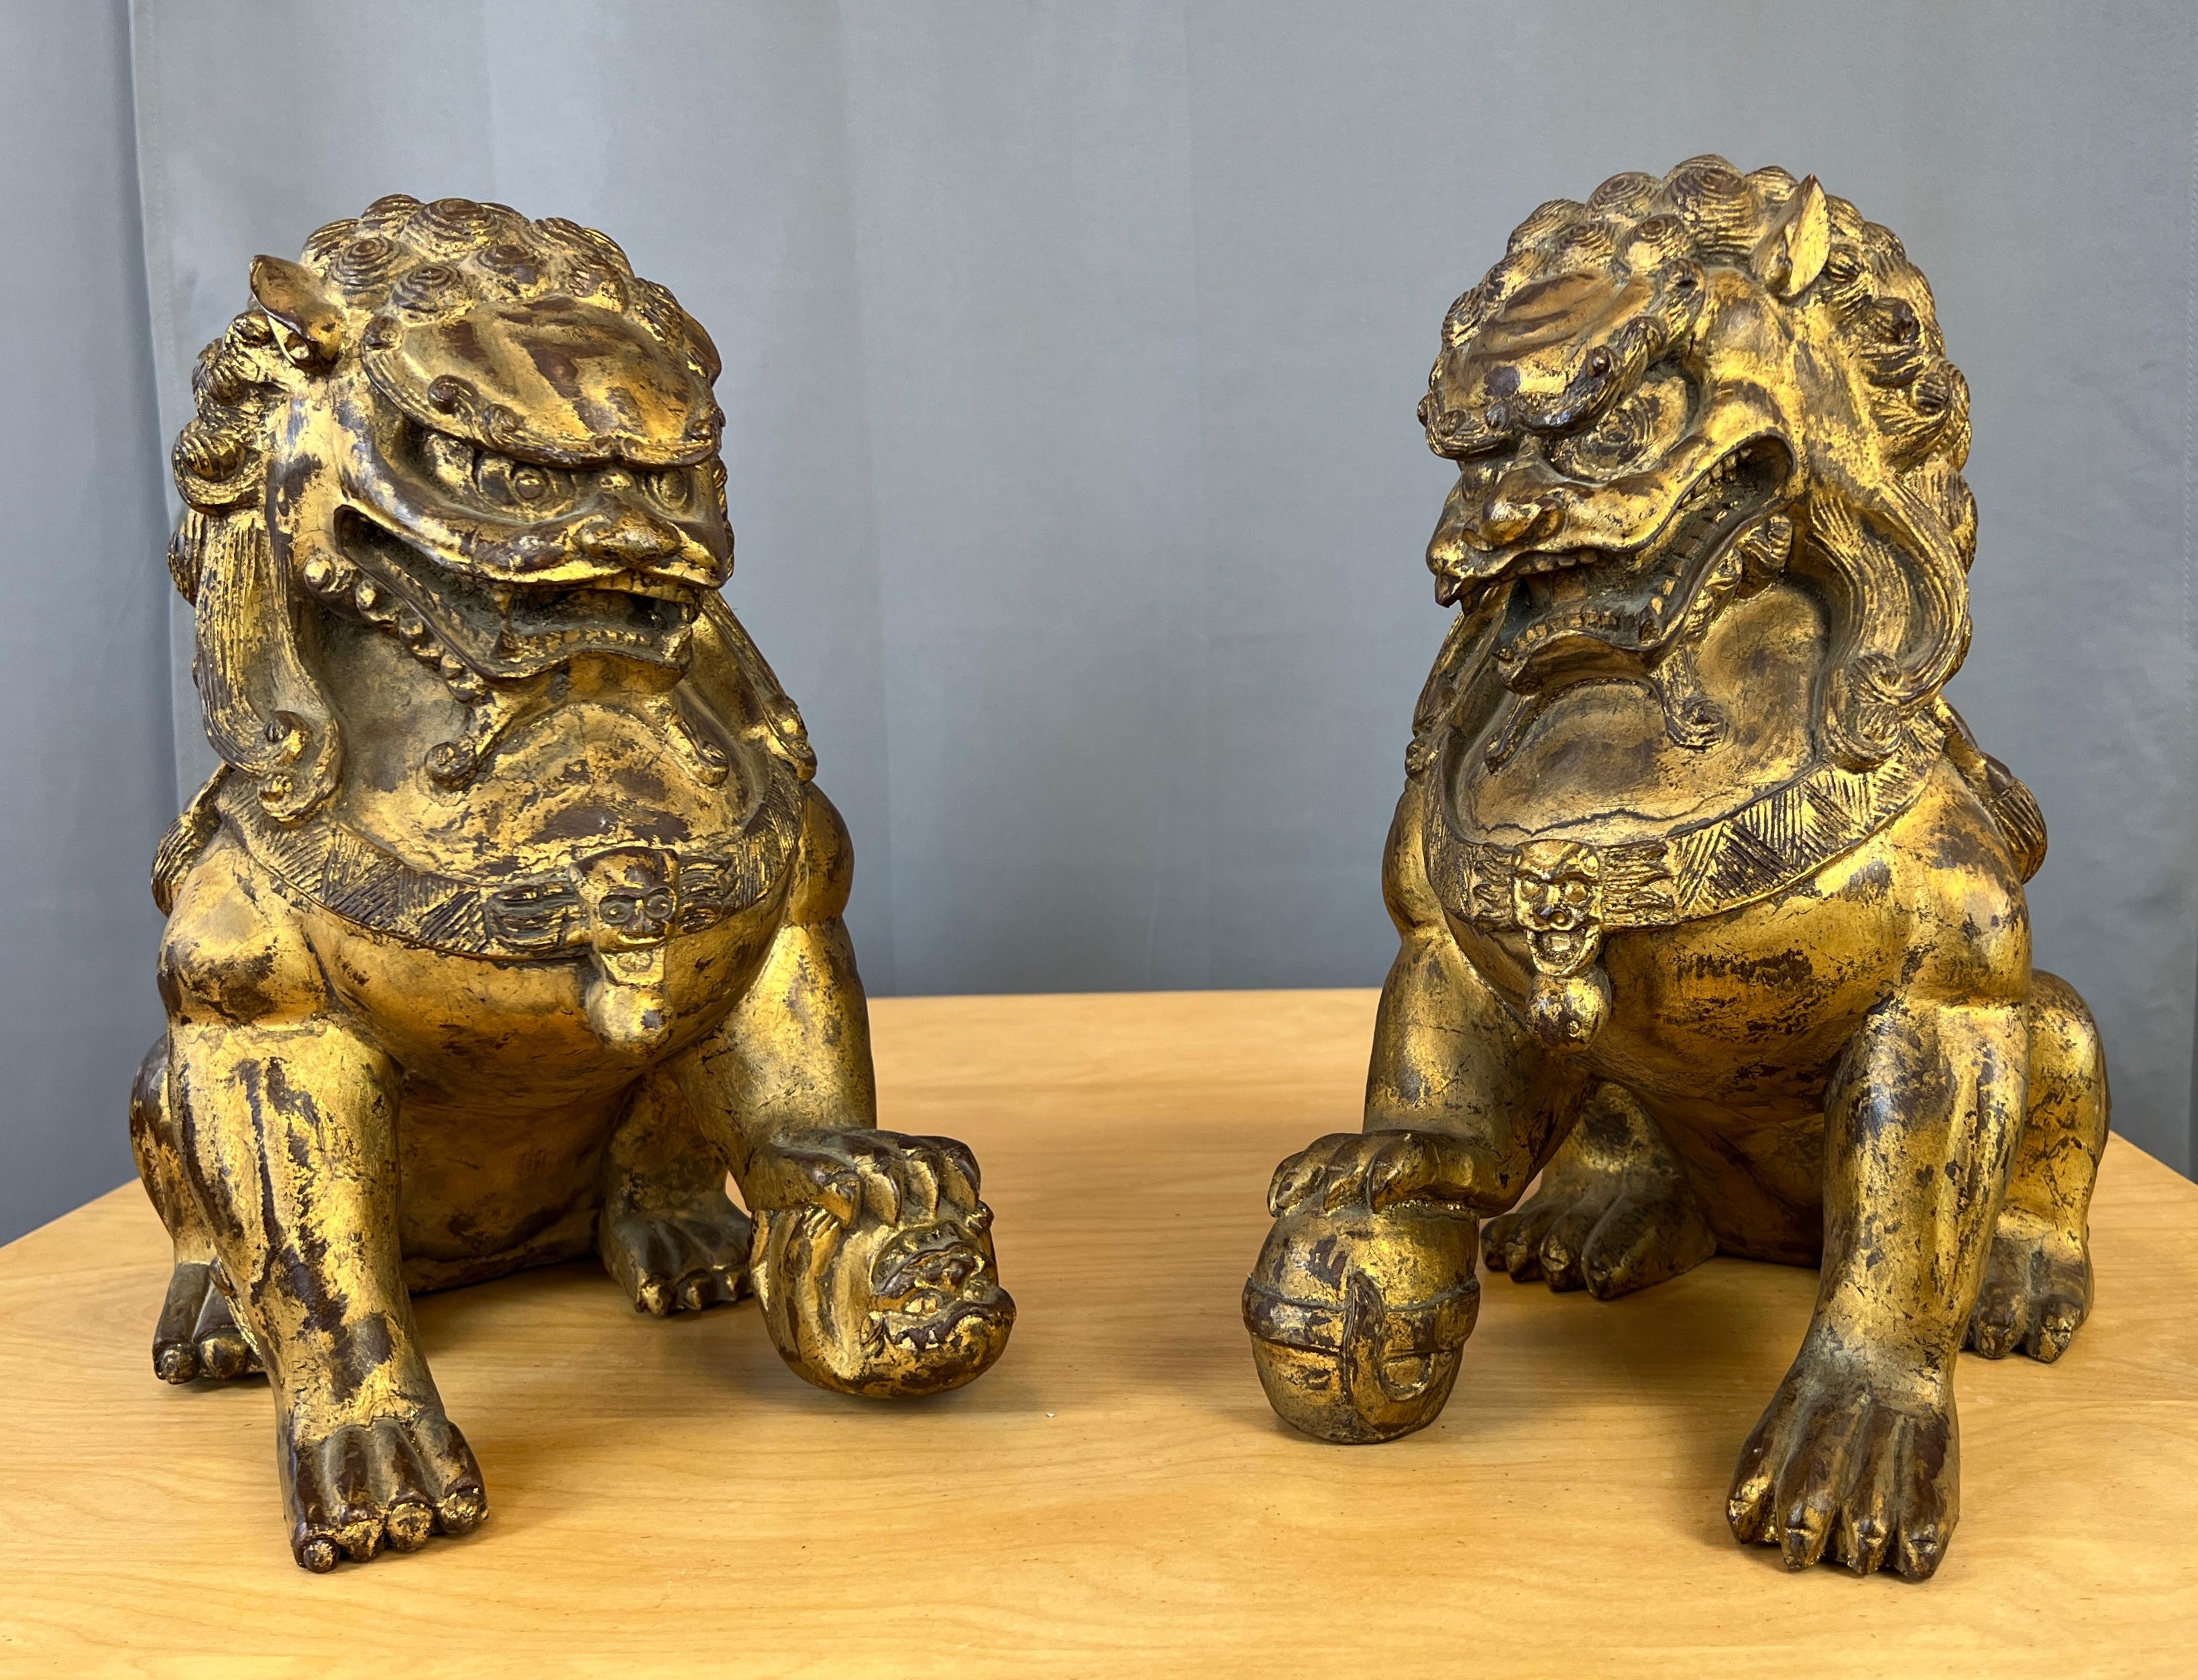 Nous vous proposons une paire de figurines chinoises d'époque en bois sculpté et doré, représentant des chiens de Foo ou des lions de Gardiole.
Merveilleux travail de sculpture à la main pour cette paire, des pattes qui marchent sur un petit